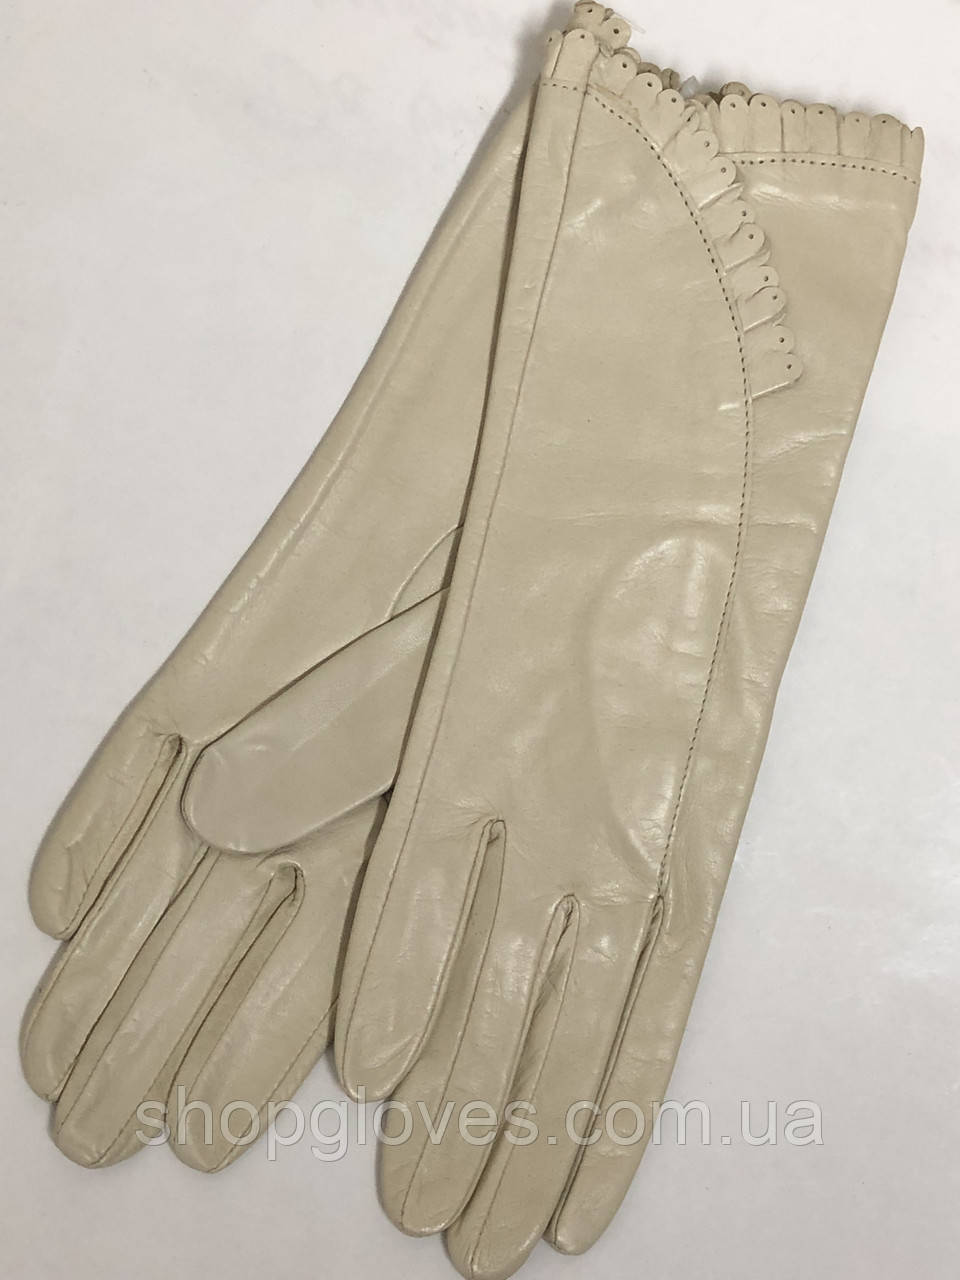 Жіночі шкіряні рукавички без підкладки з натуральної шкіри. Колір беж.